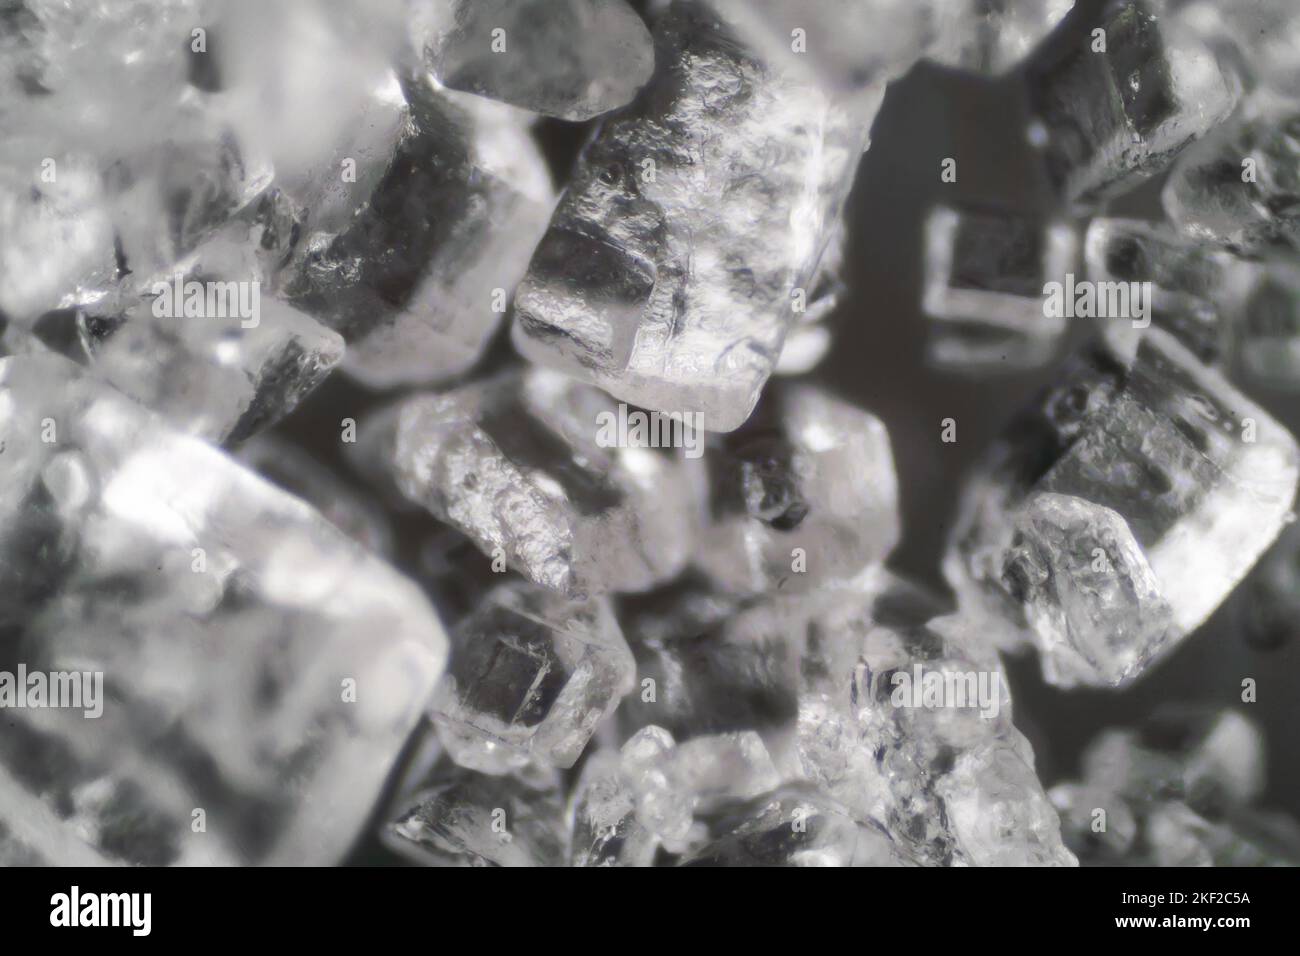 Mondo microscopico. I cristalli di sale. Foto Stock